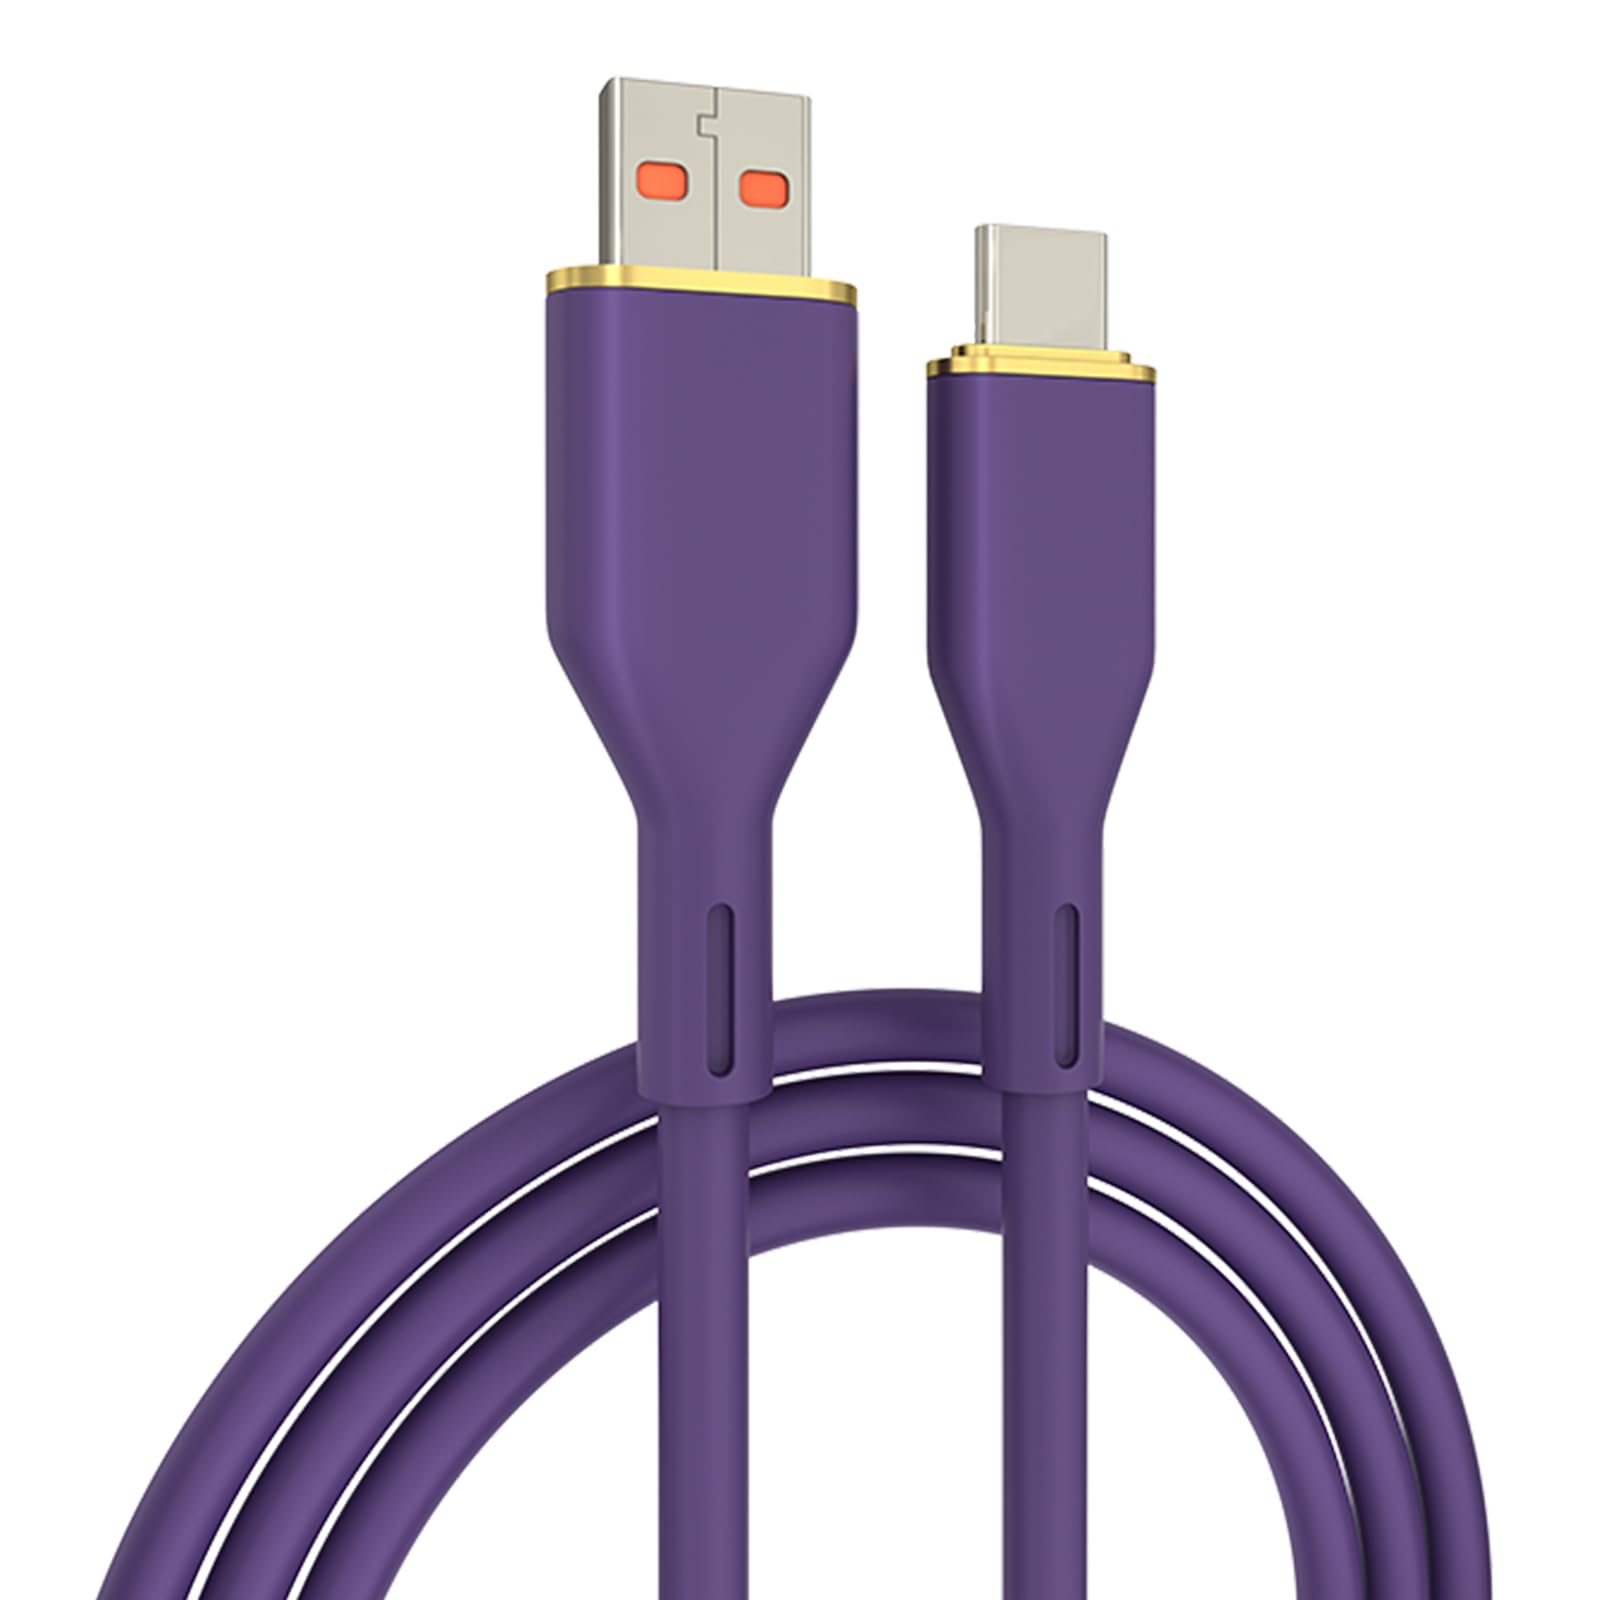 USB C 型电缆，USB A 至 USB C 5A 快速充电（3.3 英尺 1 包）充电线兼容三星 Galaxy S10 S9 S8 Plus、Note 9 8、A11 A20 A51、LG G6 G7 V30 V35、Moto Z2 Z3(图7)